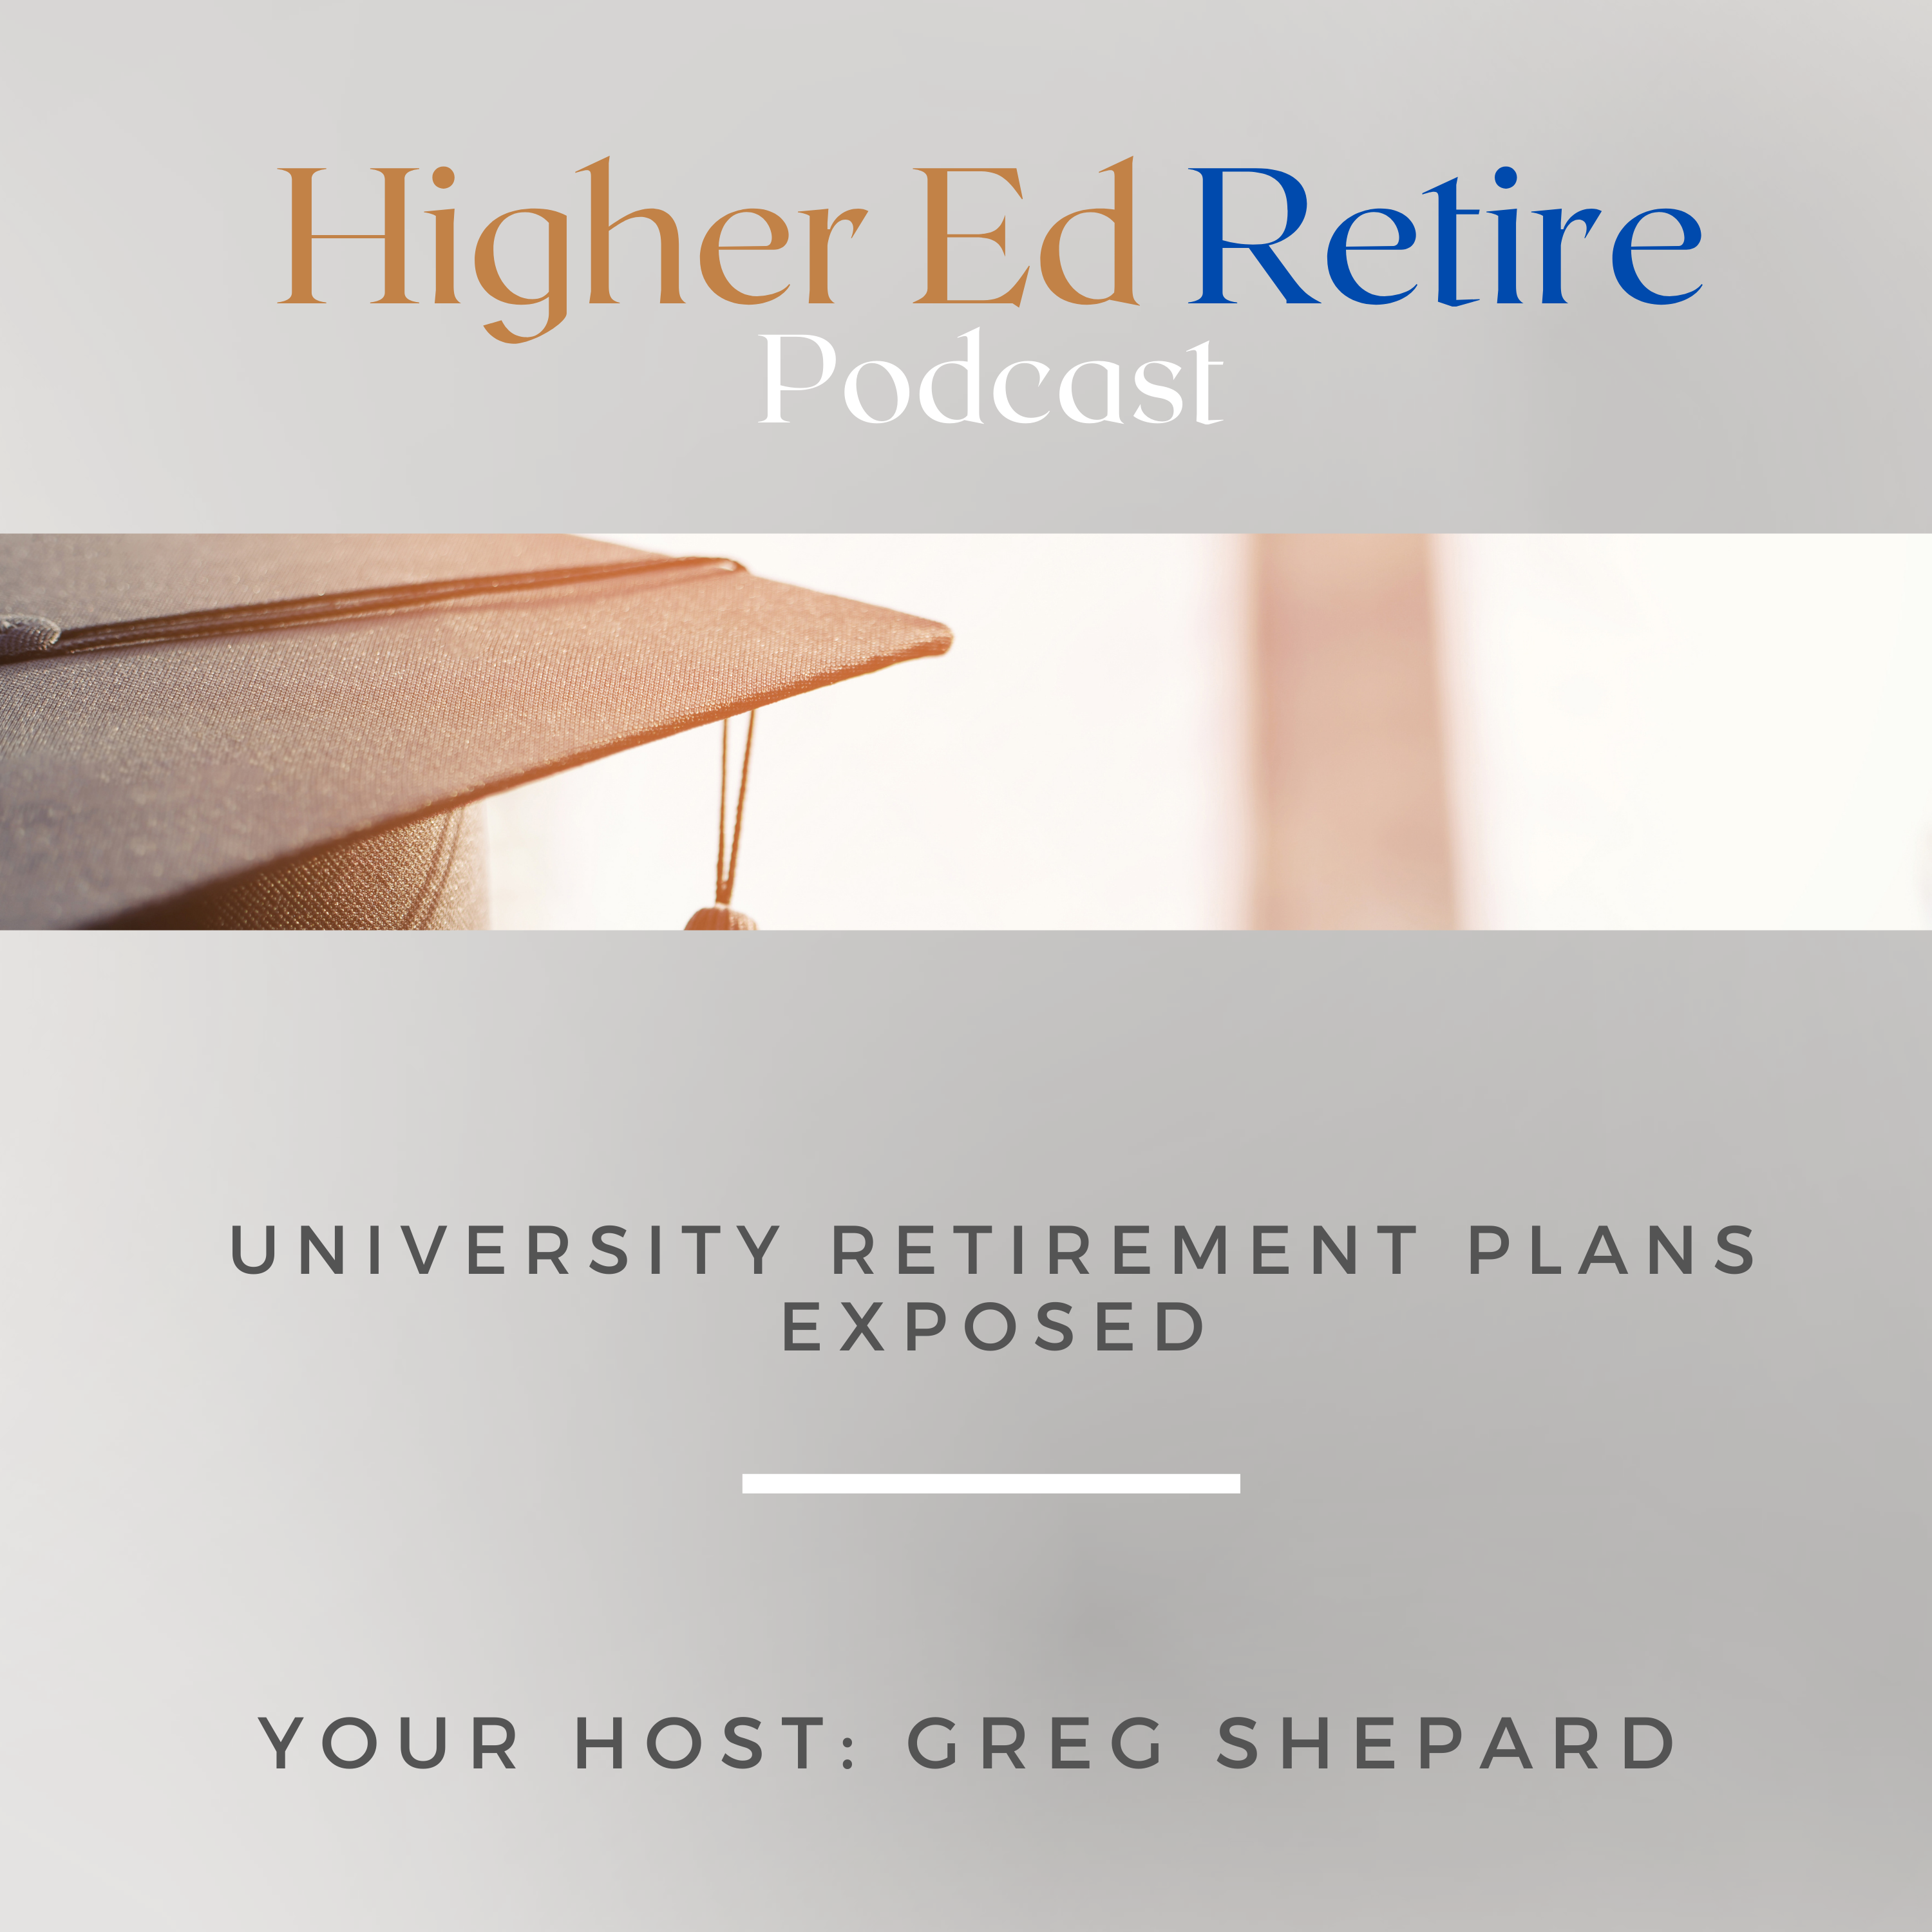 Artwork for podcast HigherEd Retire